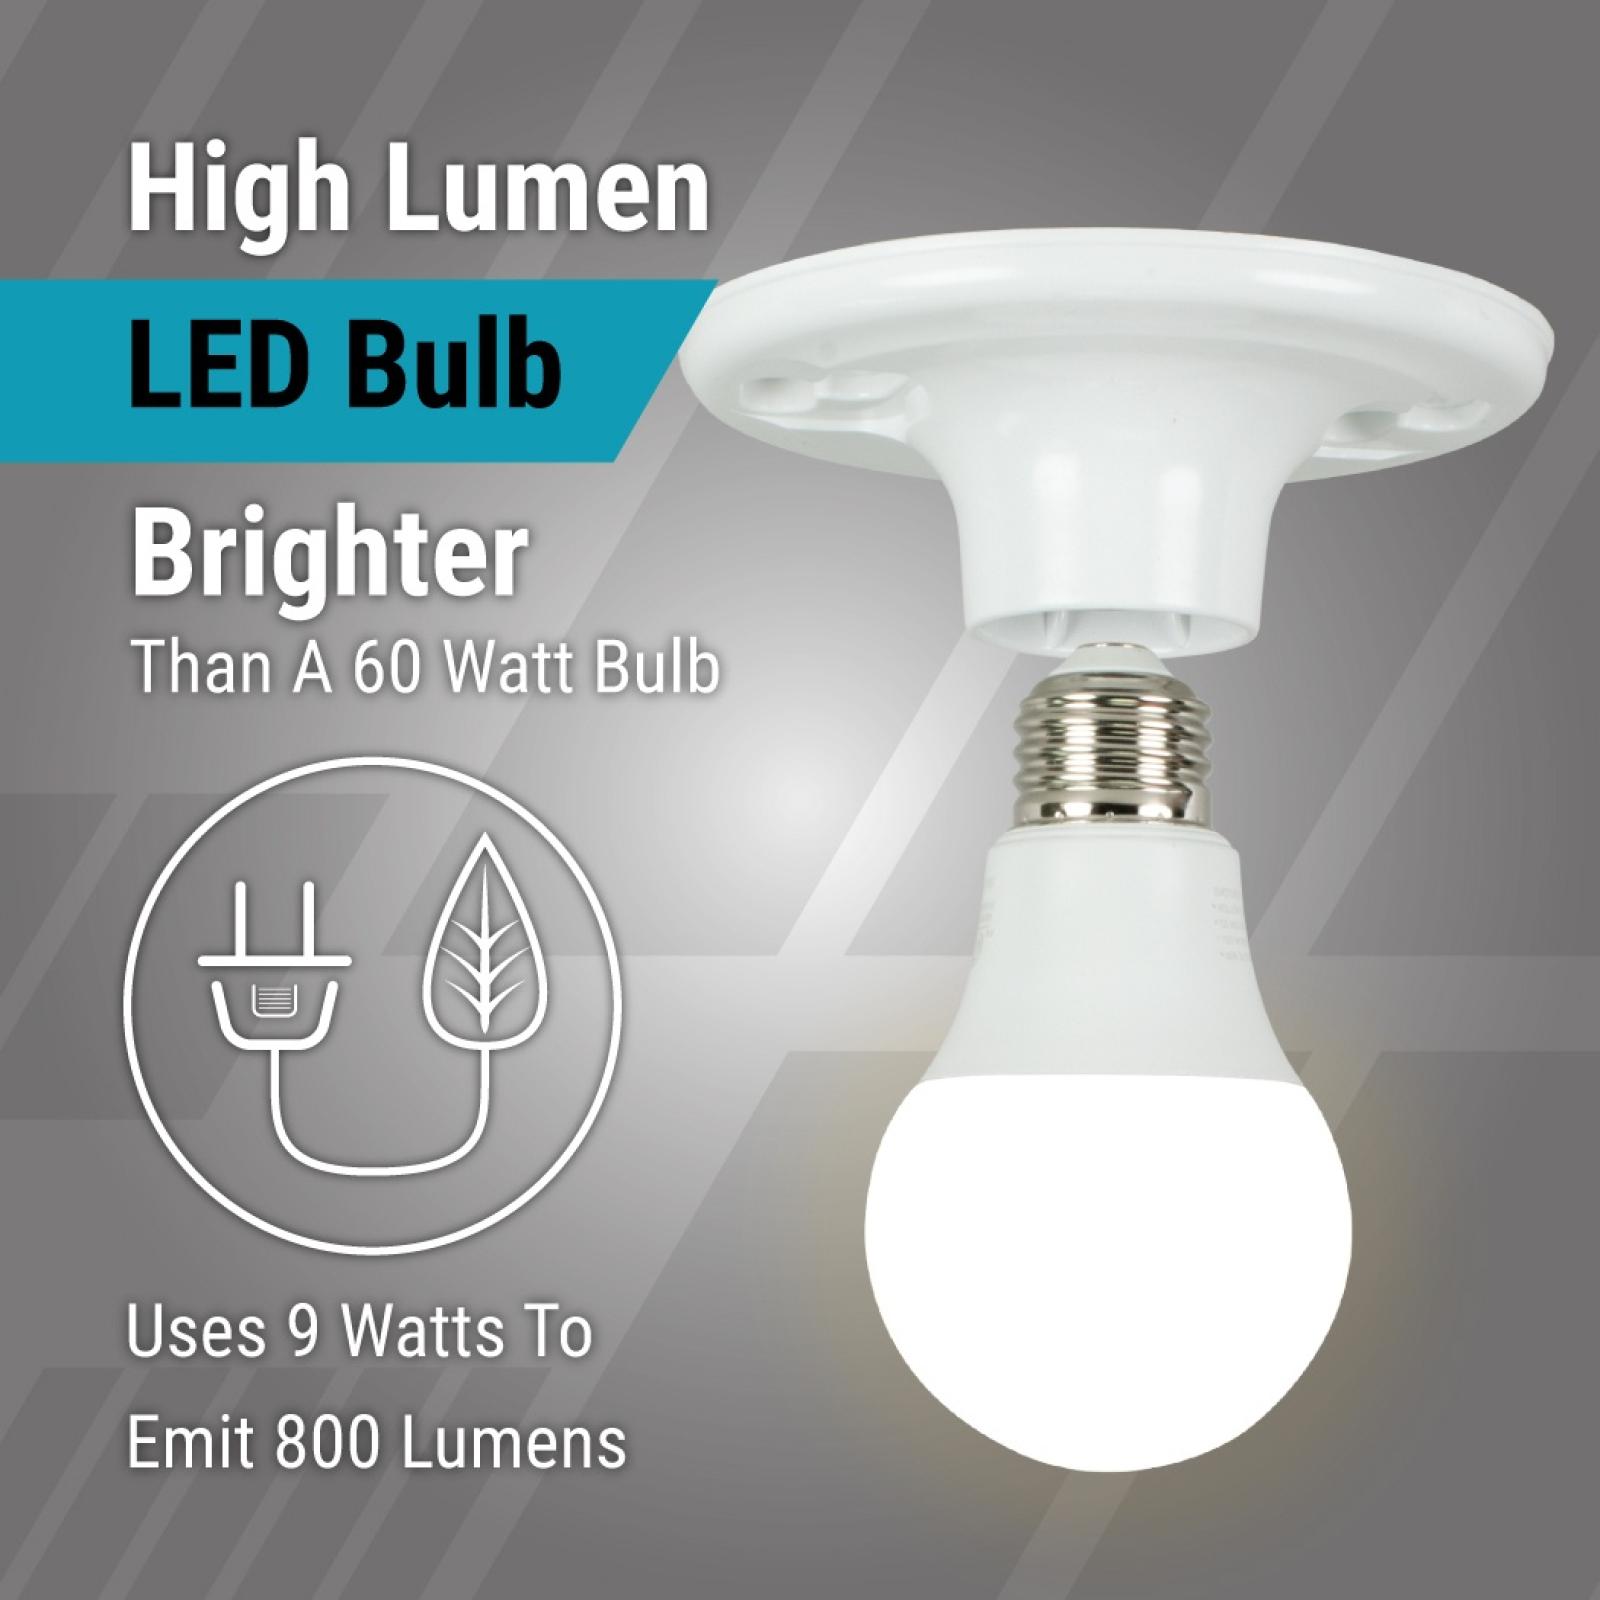 GT-Lite 60W Soft White LED Light Bulb